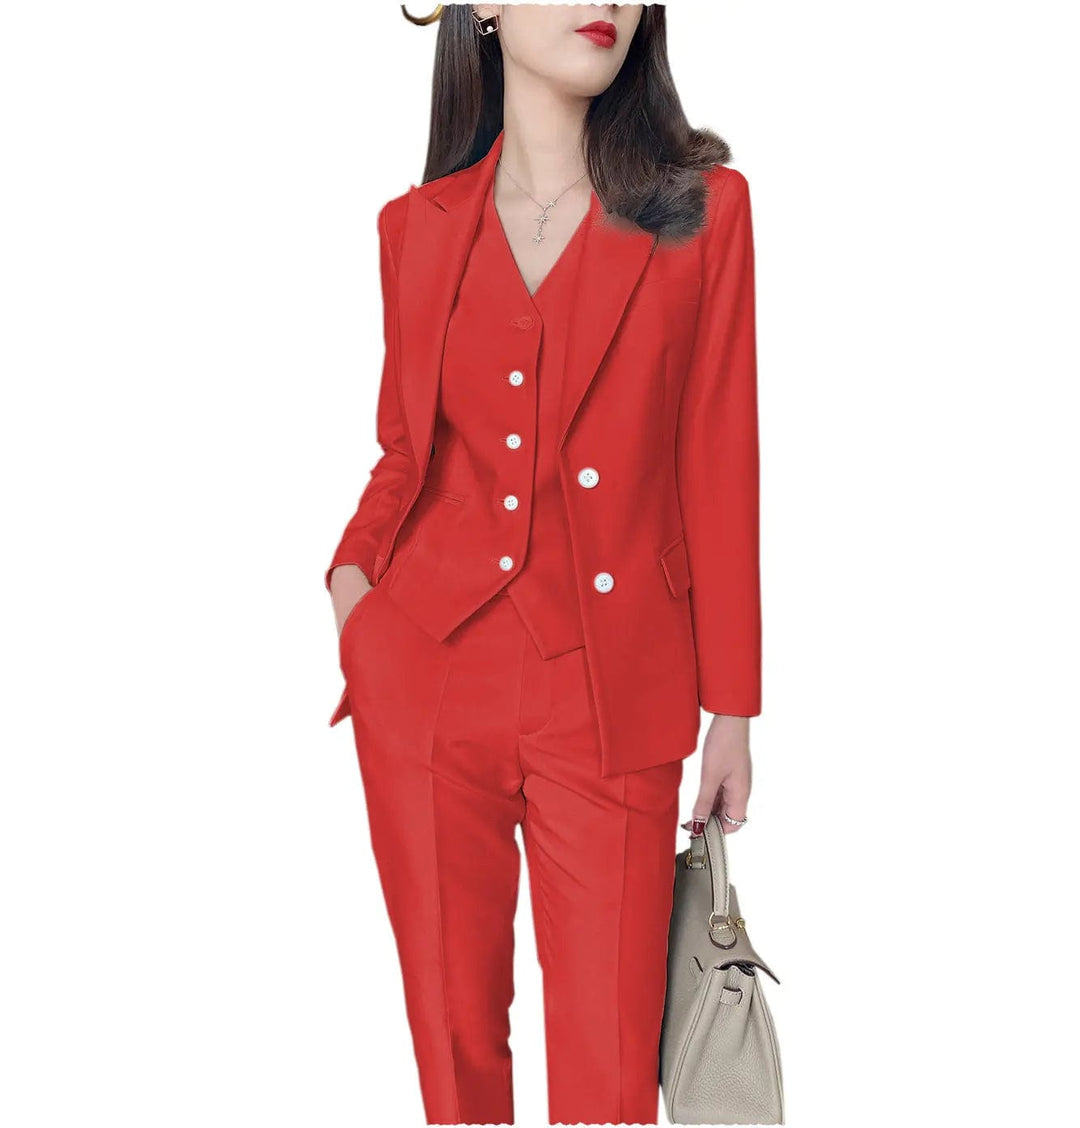 solovedress Fashion Slim Fit 3 Pieces Women Suit Peak Lapel Blazer